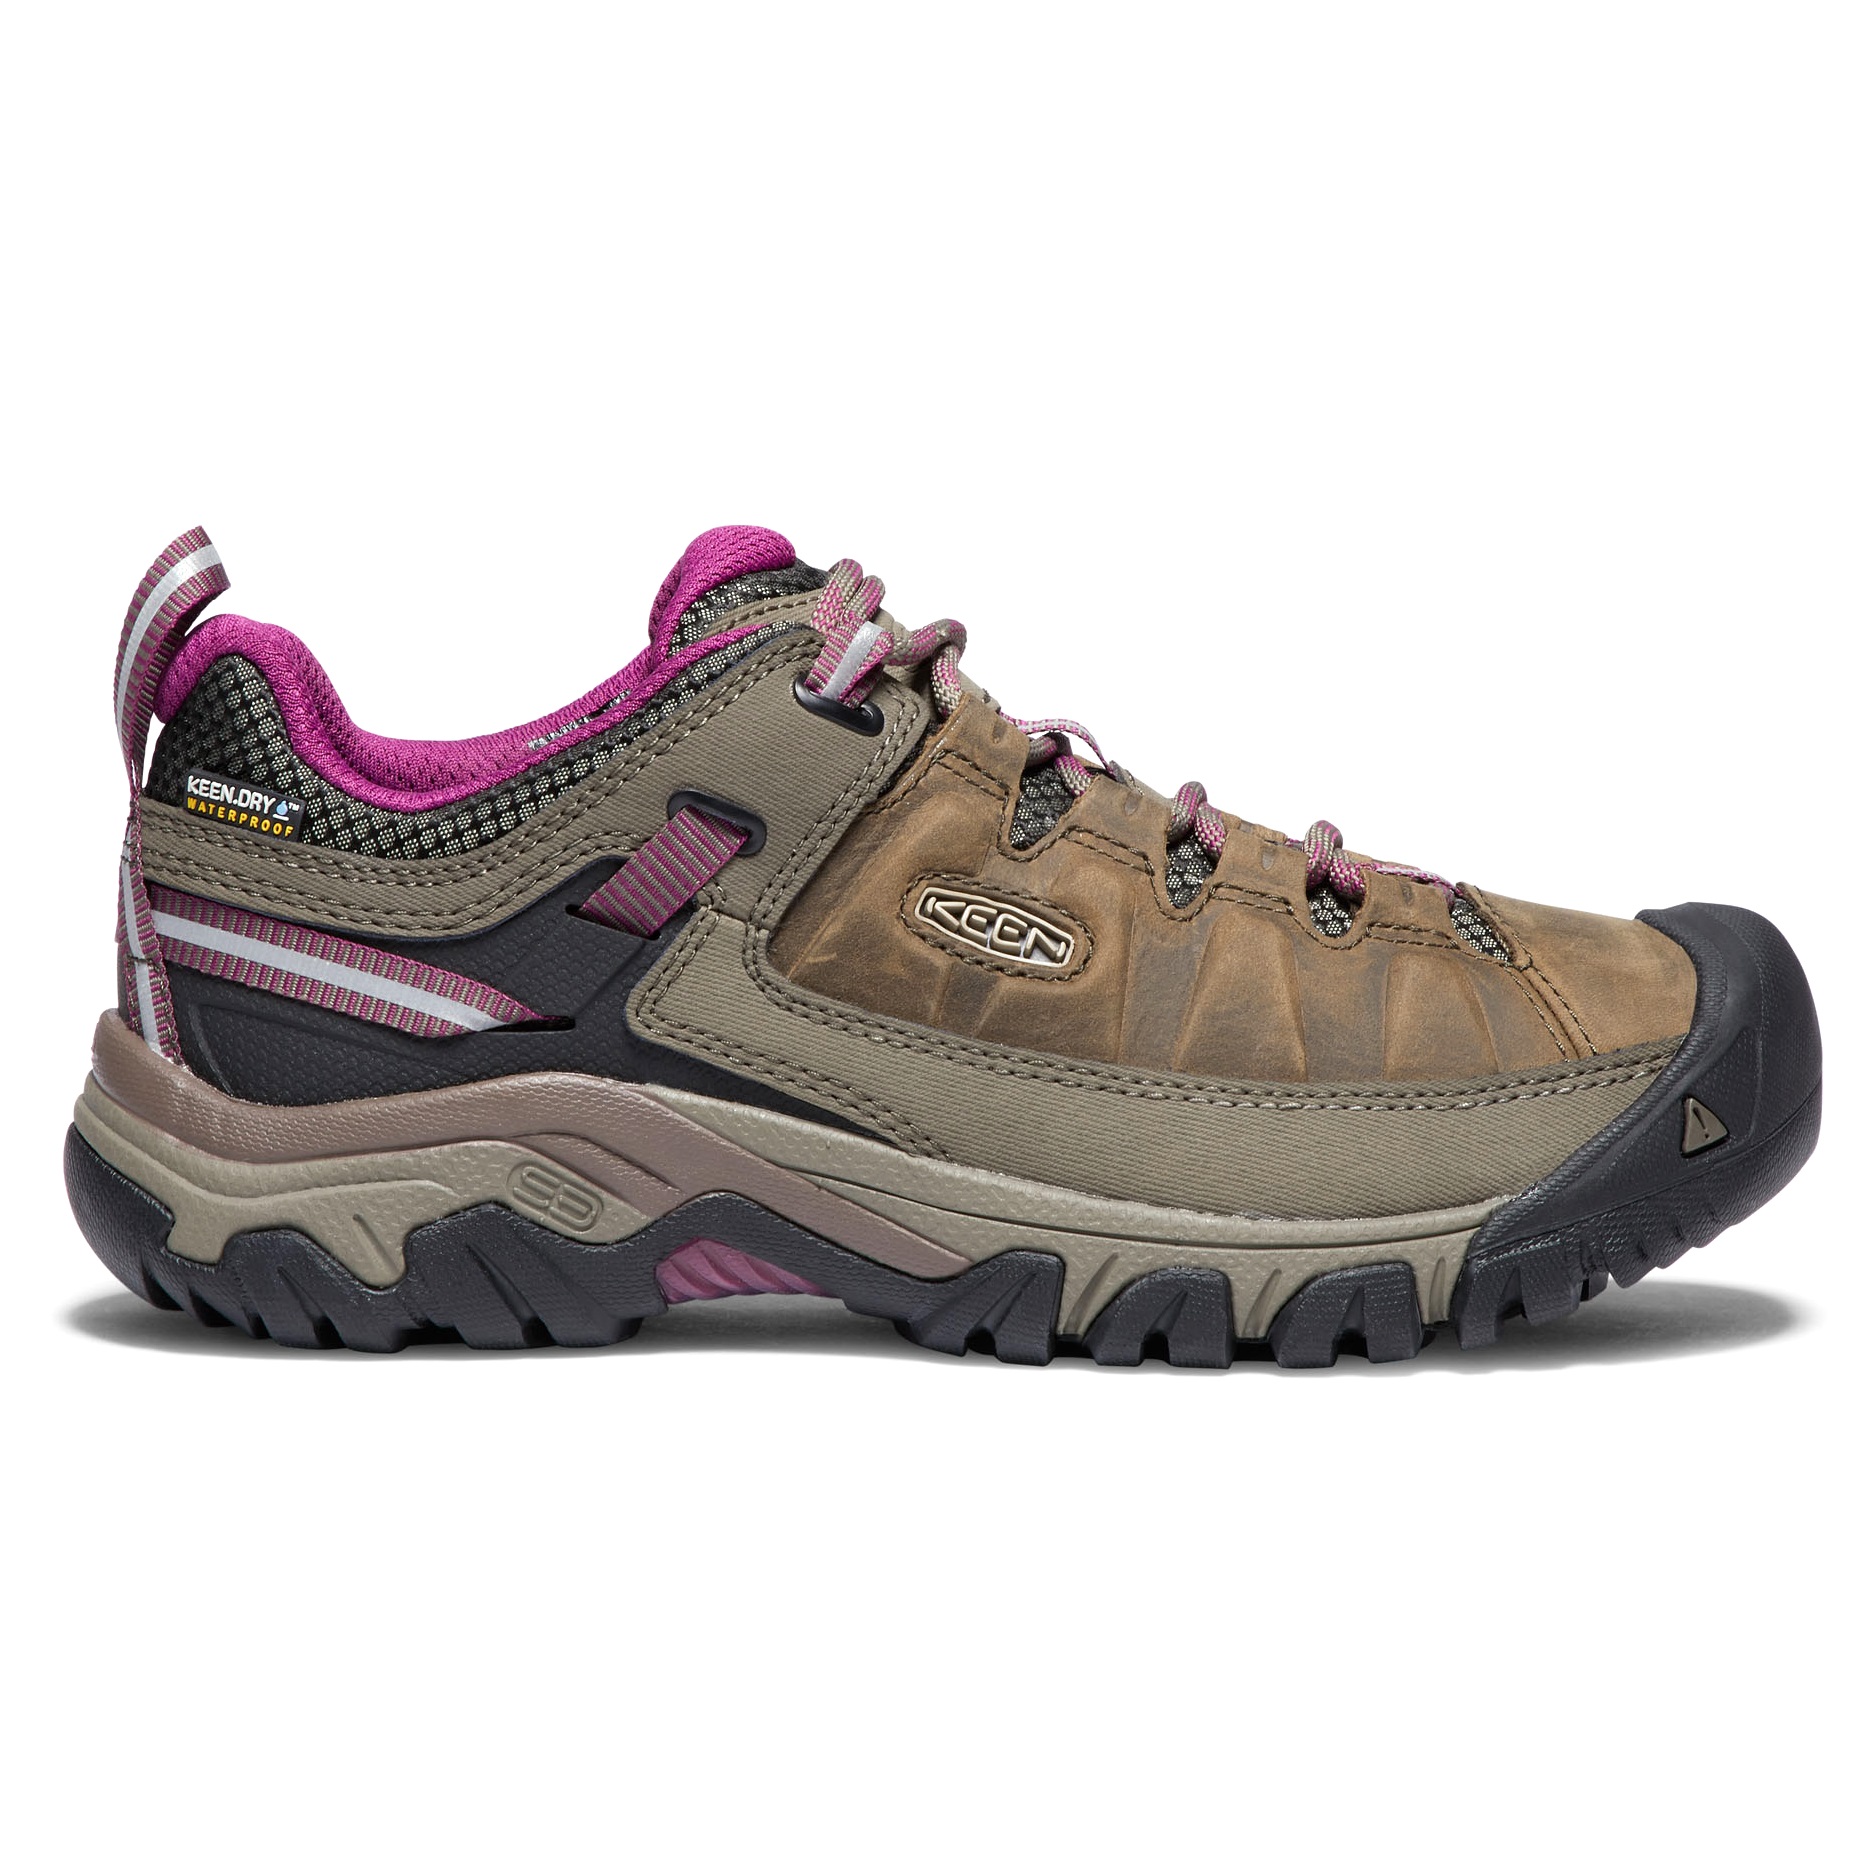 Keen Keen Women's Targhee III Waterproof Hiking Shoes Weiss/Boysenberry 36, Weiss/Boysenberry